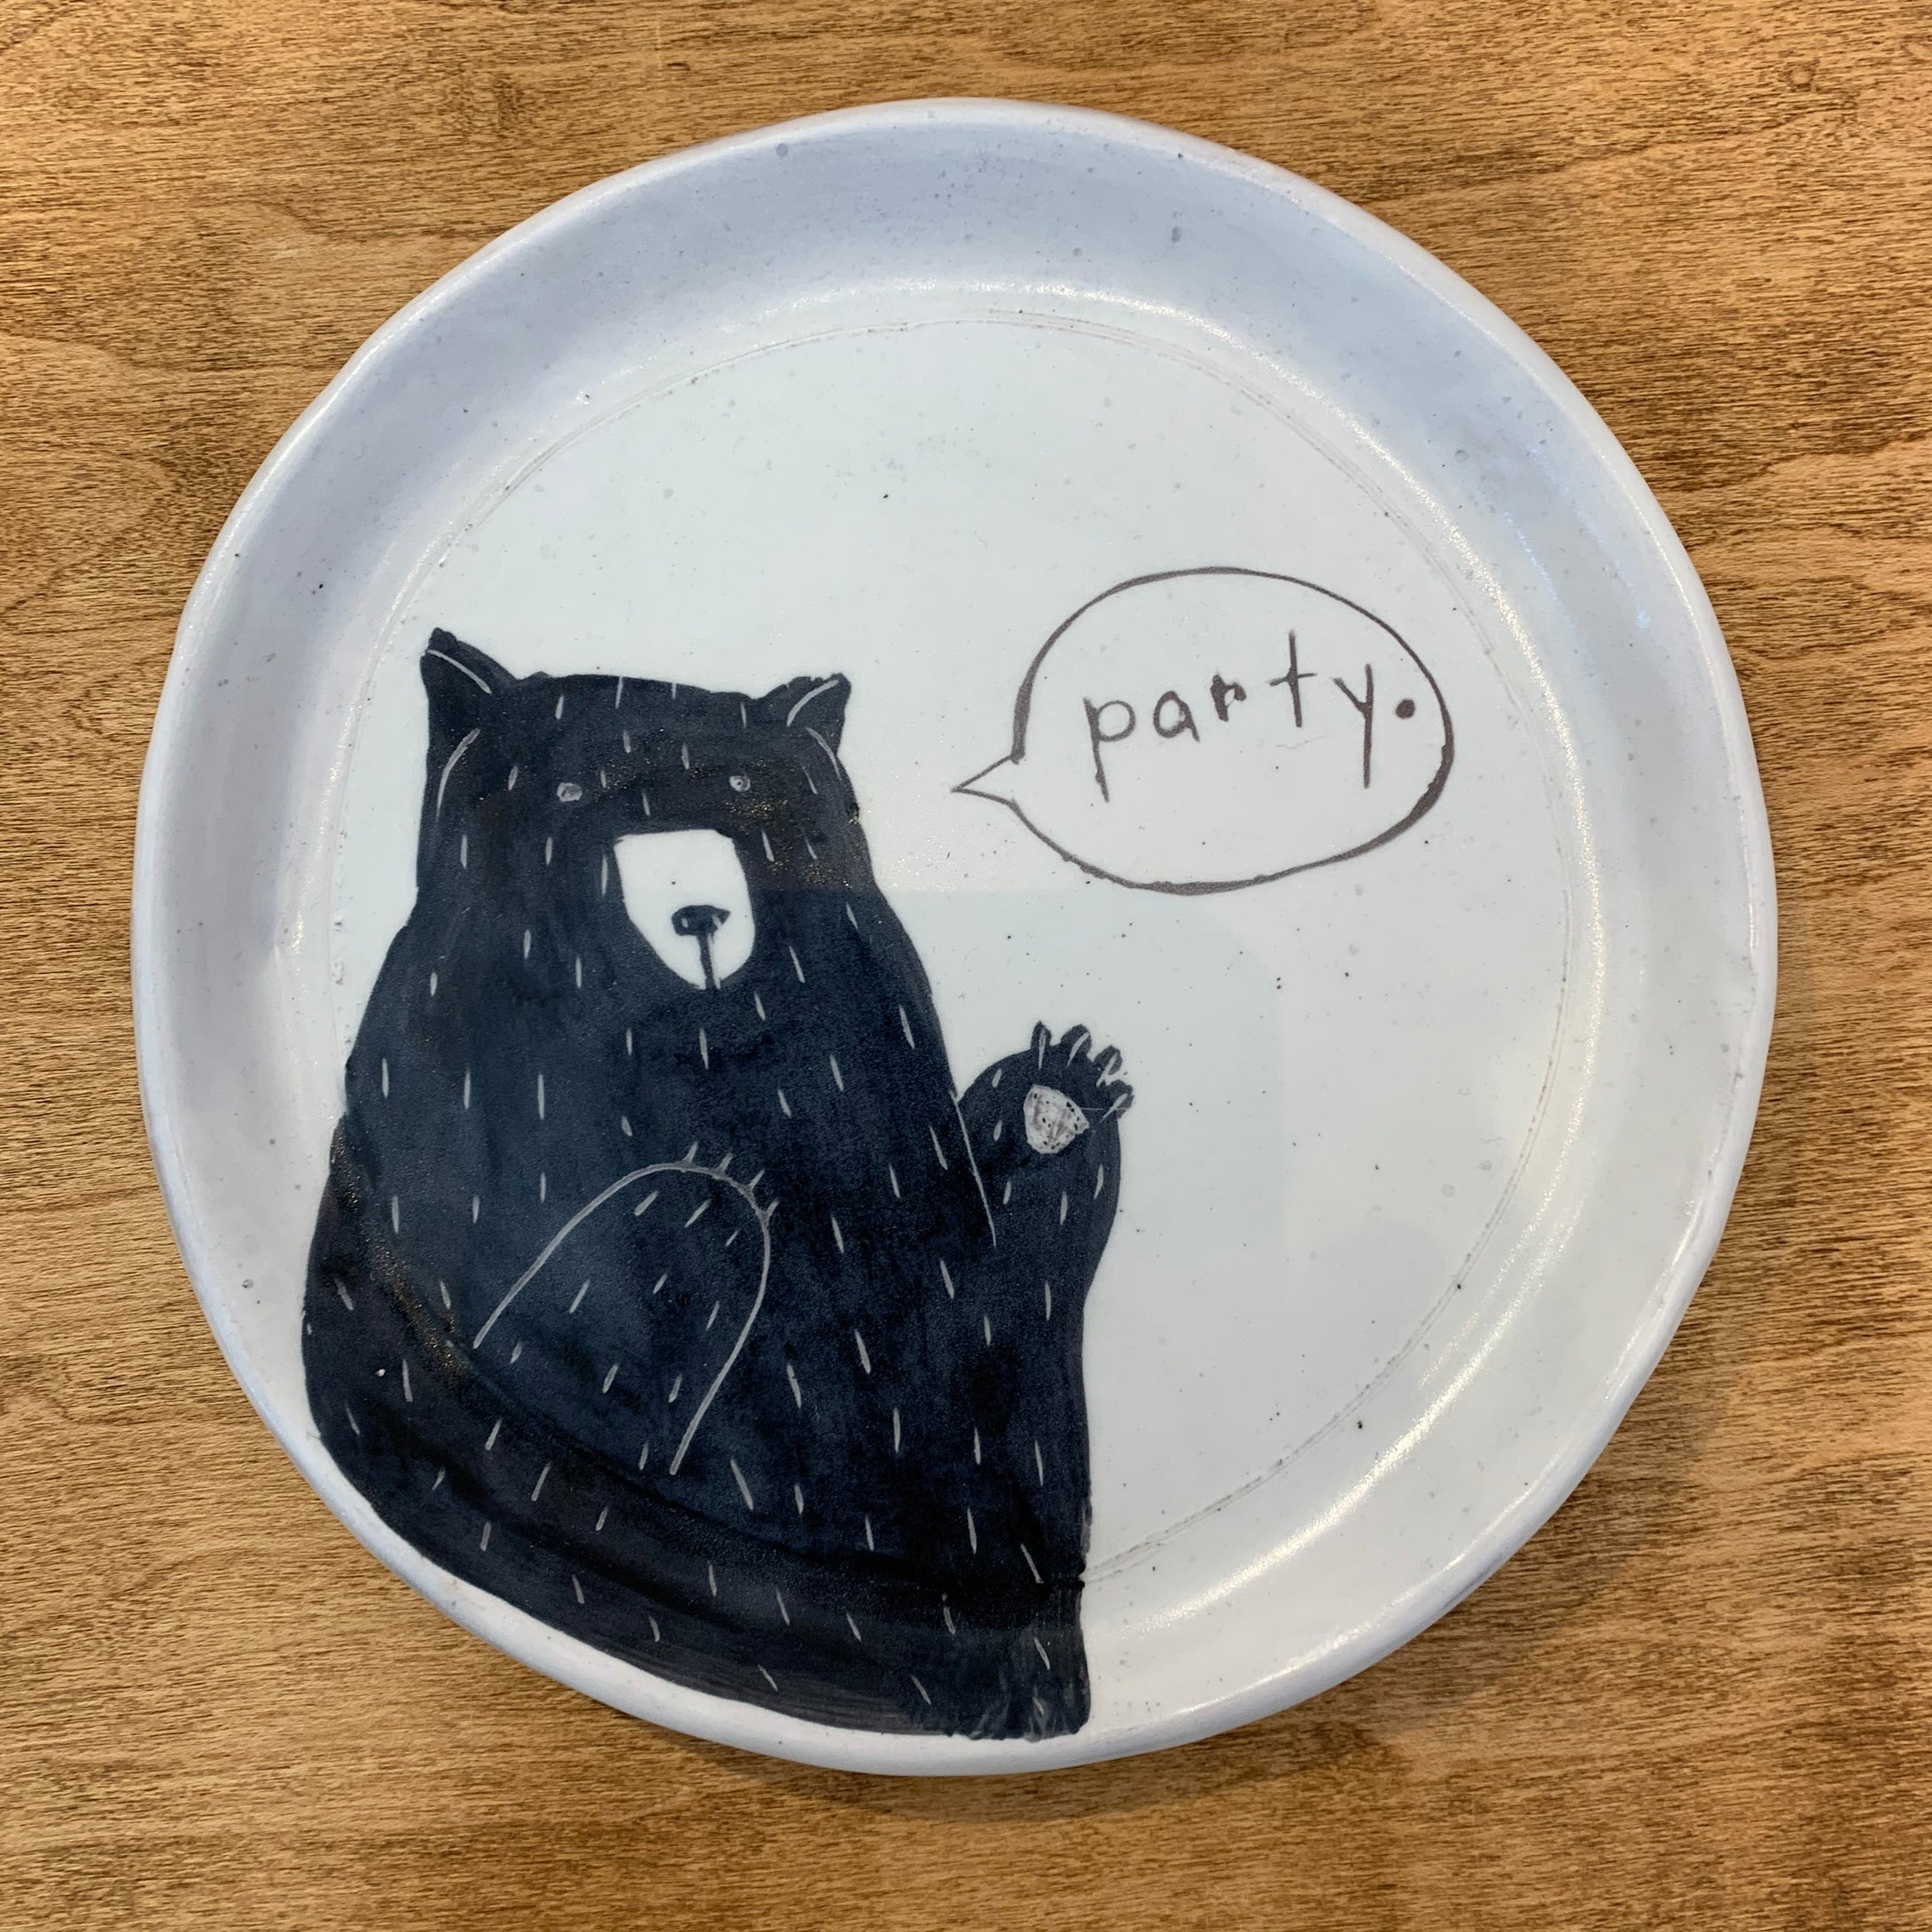 Josie Jurczenia: Small Bear Plate, Party